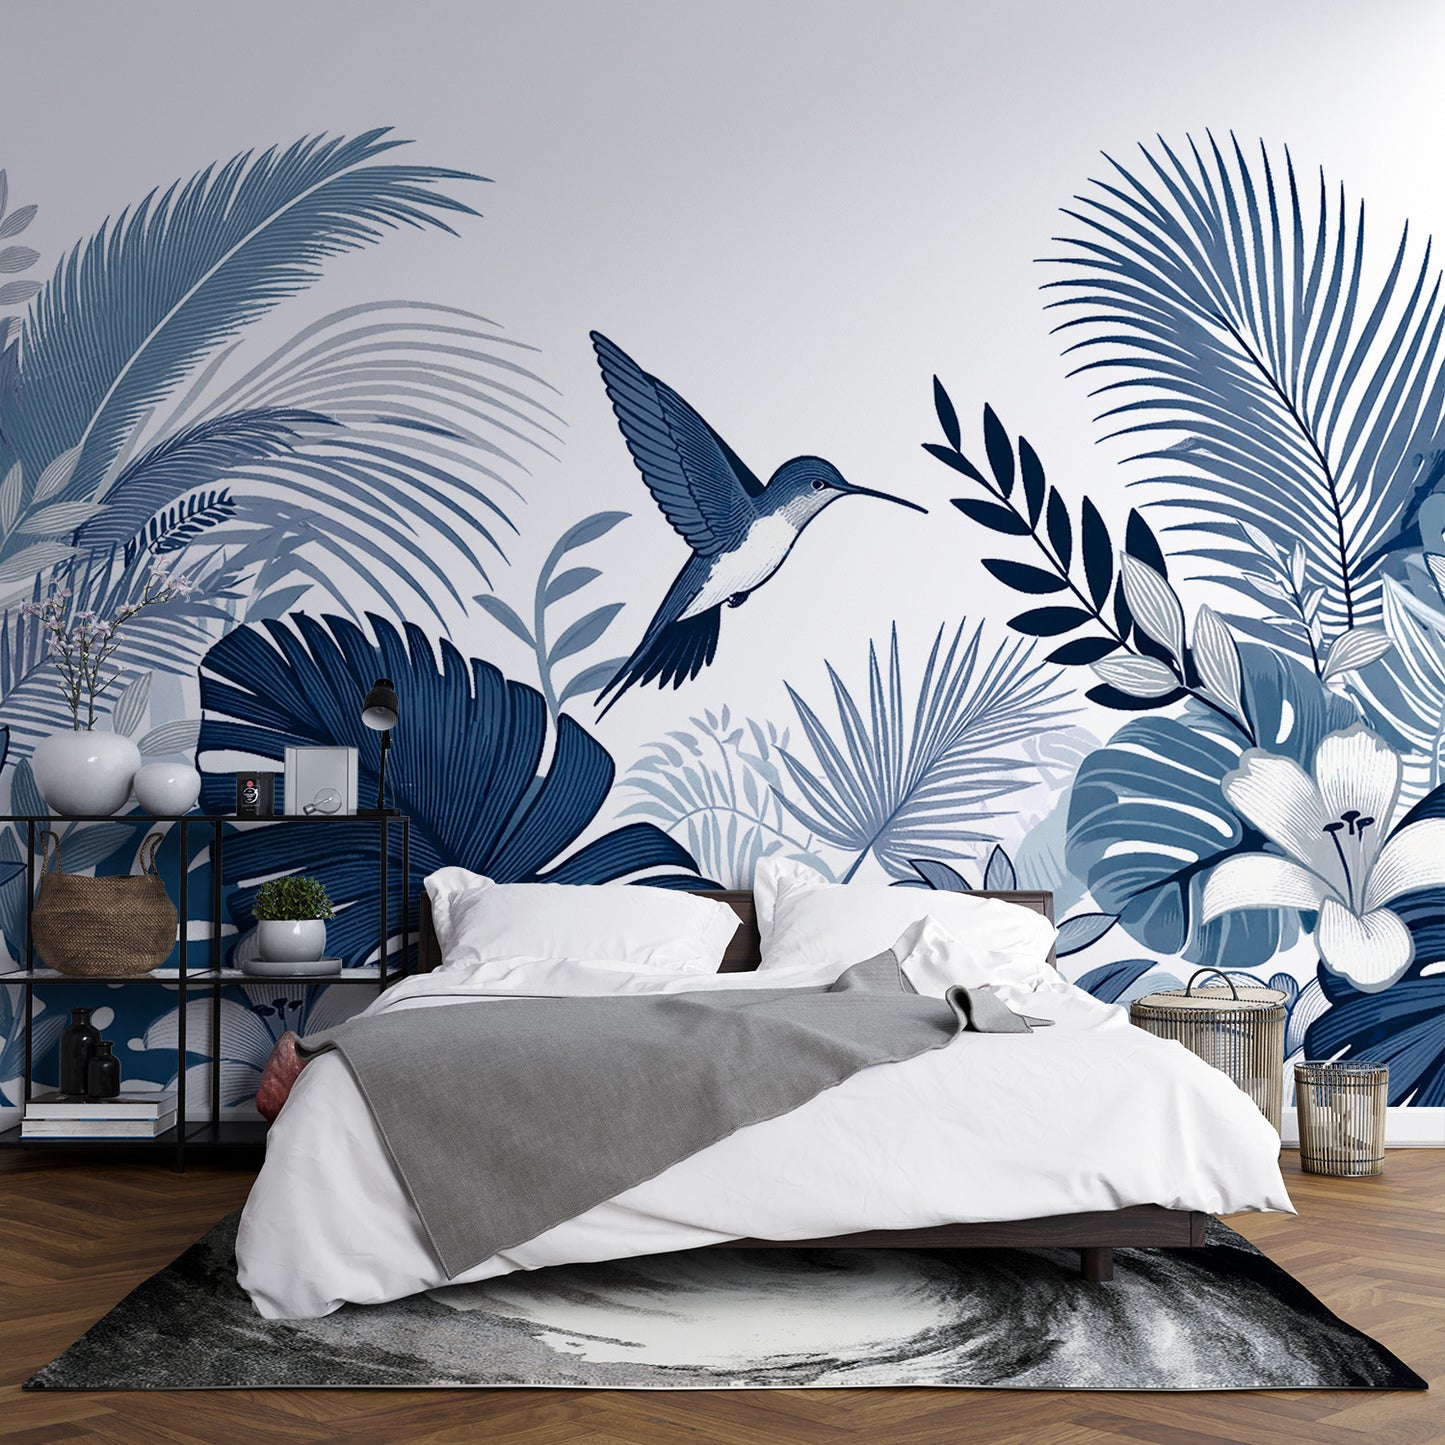 Papier peint jungle bleu canard | Colibri et feuillages vintages